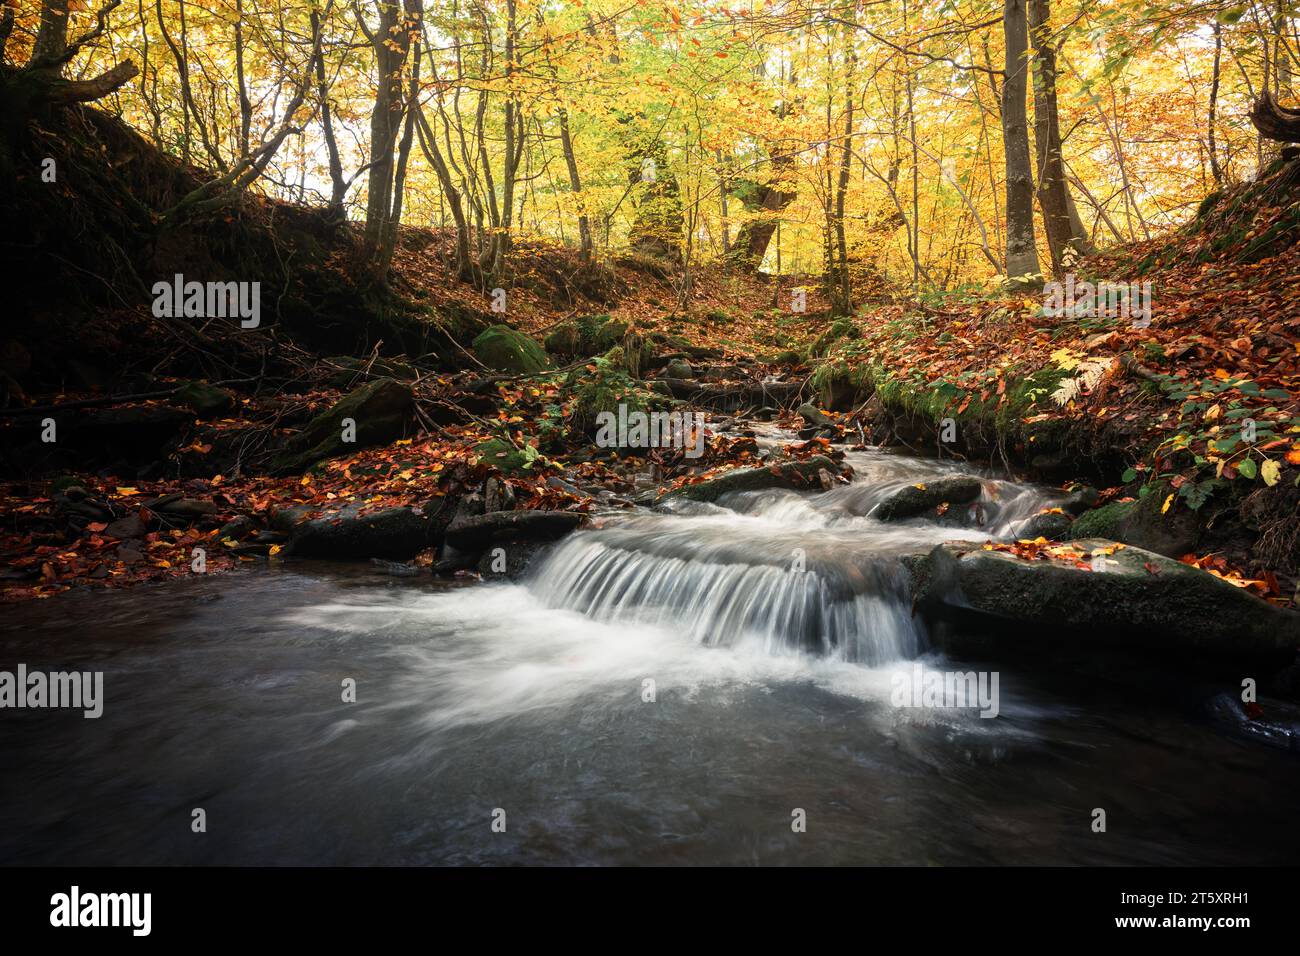 Ruisseau de montagne pur dans la forêt d'automne colorée. Scène sauvage avec de l'eau claire, des feuilles orangées et des arbres jaunes. Arrière-plan de la nature Banque D'Images